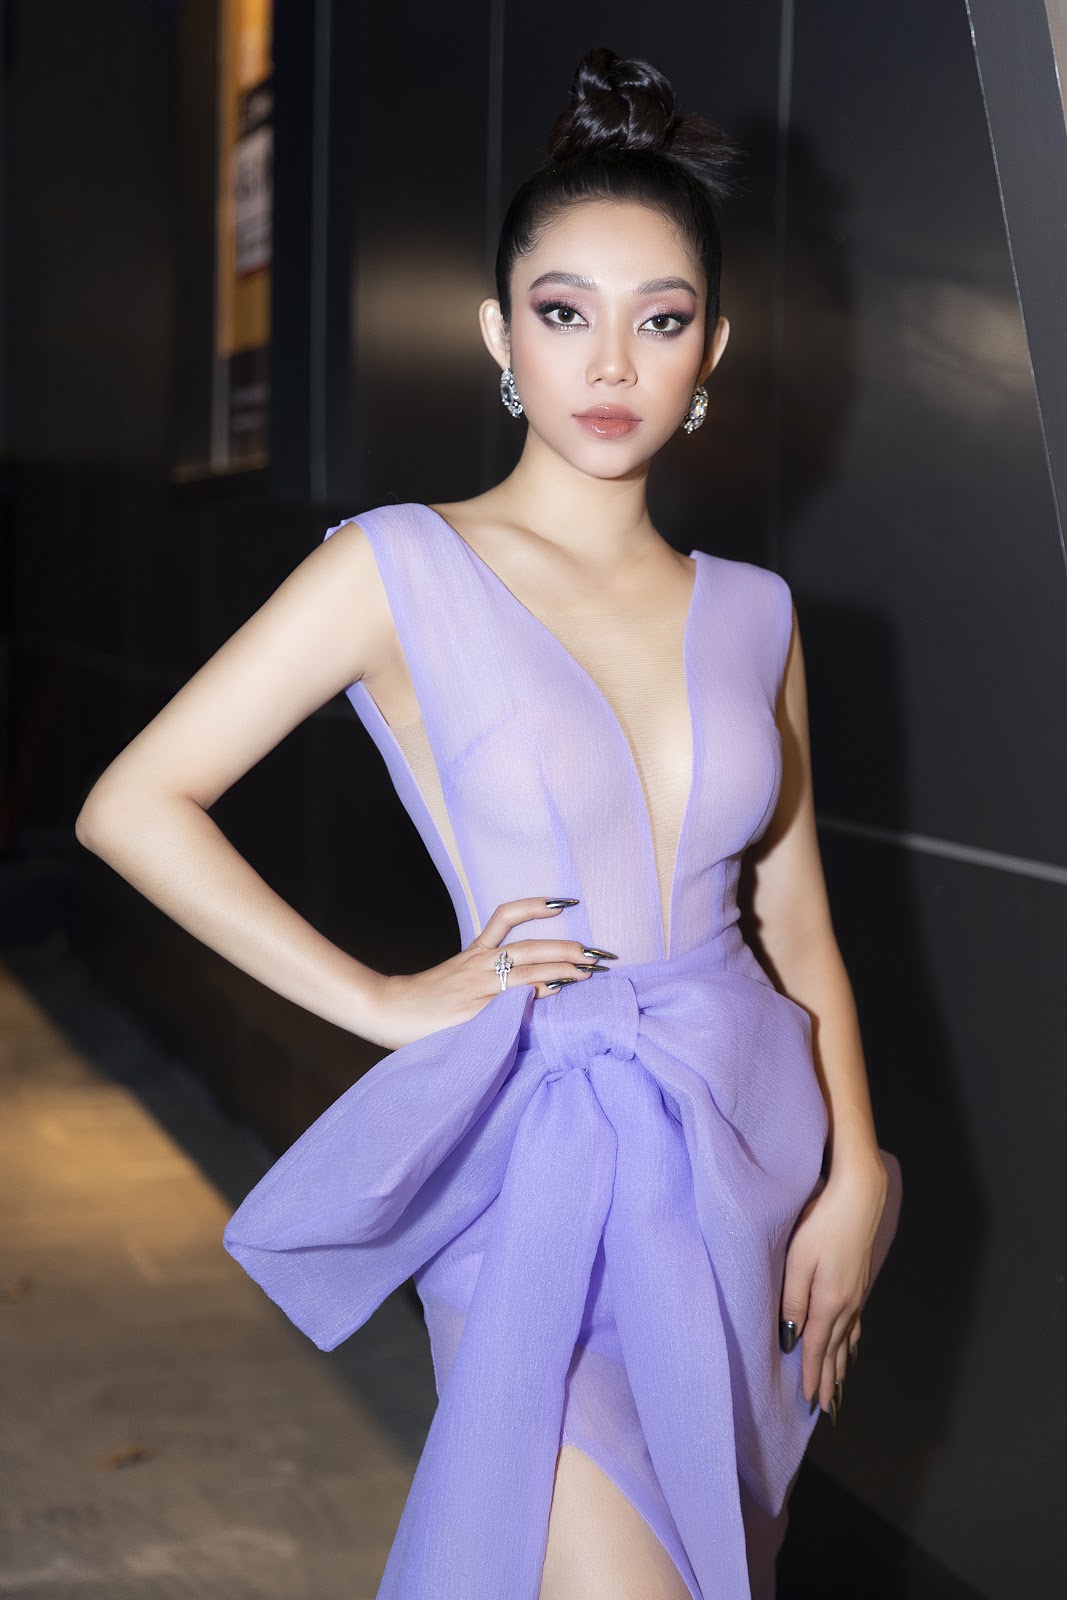 Lâm Thu Hồng diện váy tím sang chảnh, hút mắt khán giả tại Tuần lễ Thời trang Quốc tế Việt Nam 2020 - Hình 3